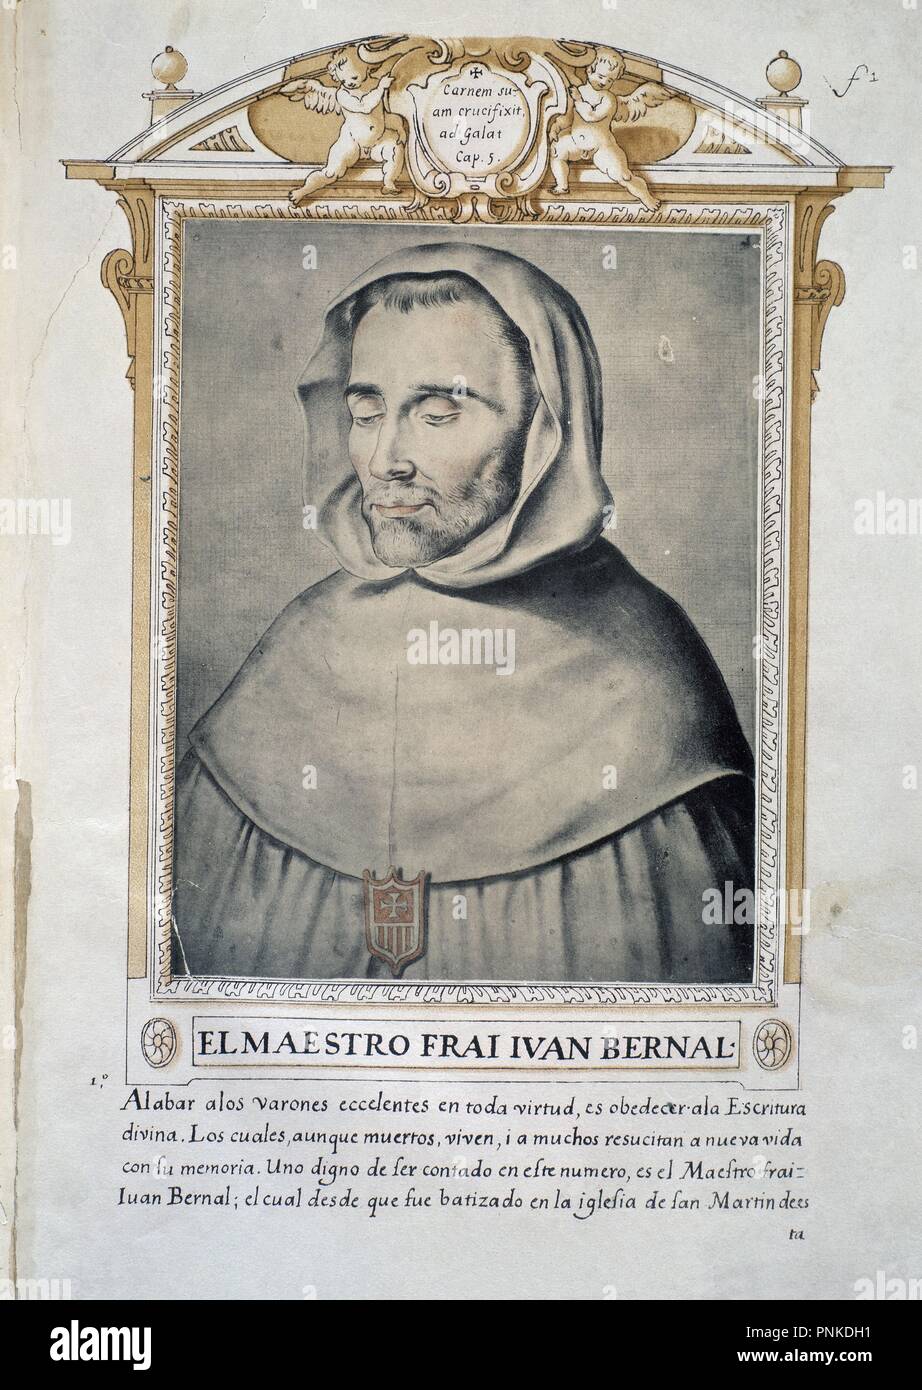 FRAY JUAN BERNAL - LIBRO DE RETRATOS DE ILUSTRES Y MEMORABLES VARONES - 1599. Author: PACHECO, FRANCISCO. Location: BIBLIOTECA NACIONAL-COLECCION. MADRID. SPAIN. Stock Photo